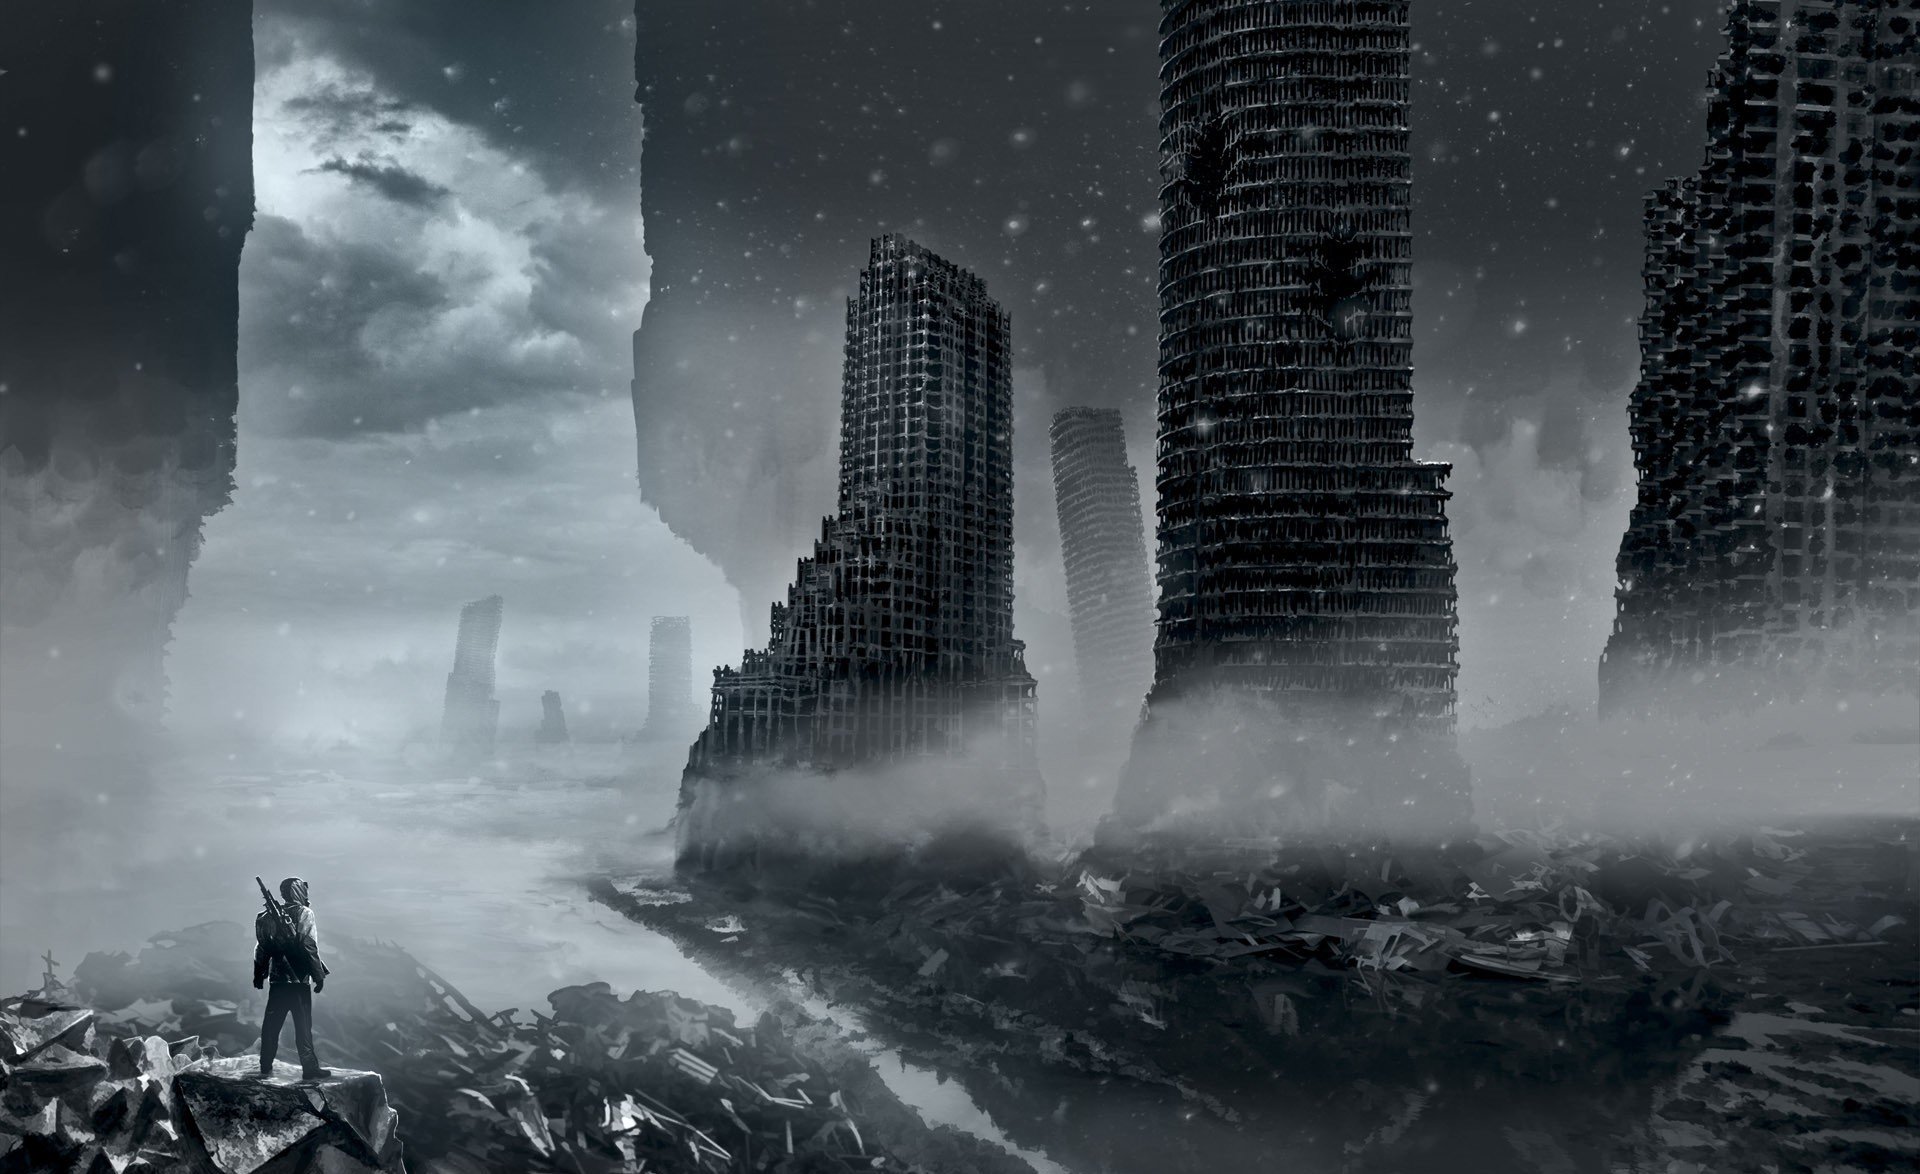 romantik der apokalypse romantisch apokalyptisch alexiuss kunst ruinen stadt zerstörung winter schnee wolken verwüstung waffen